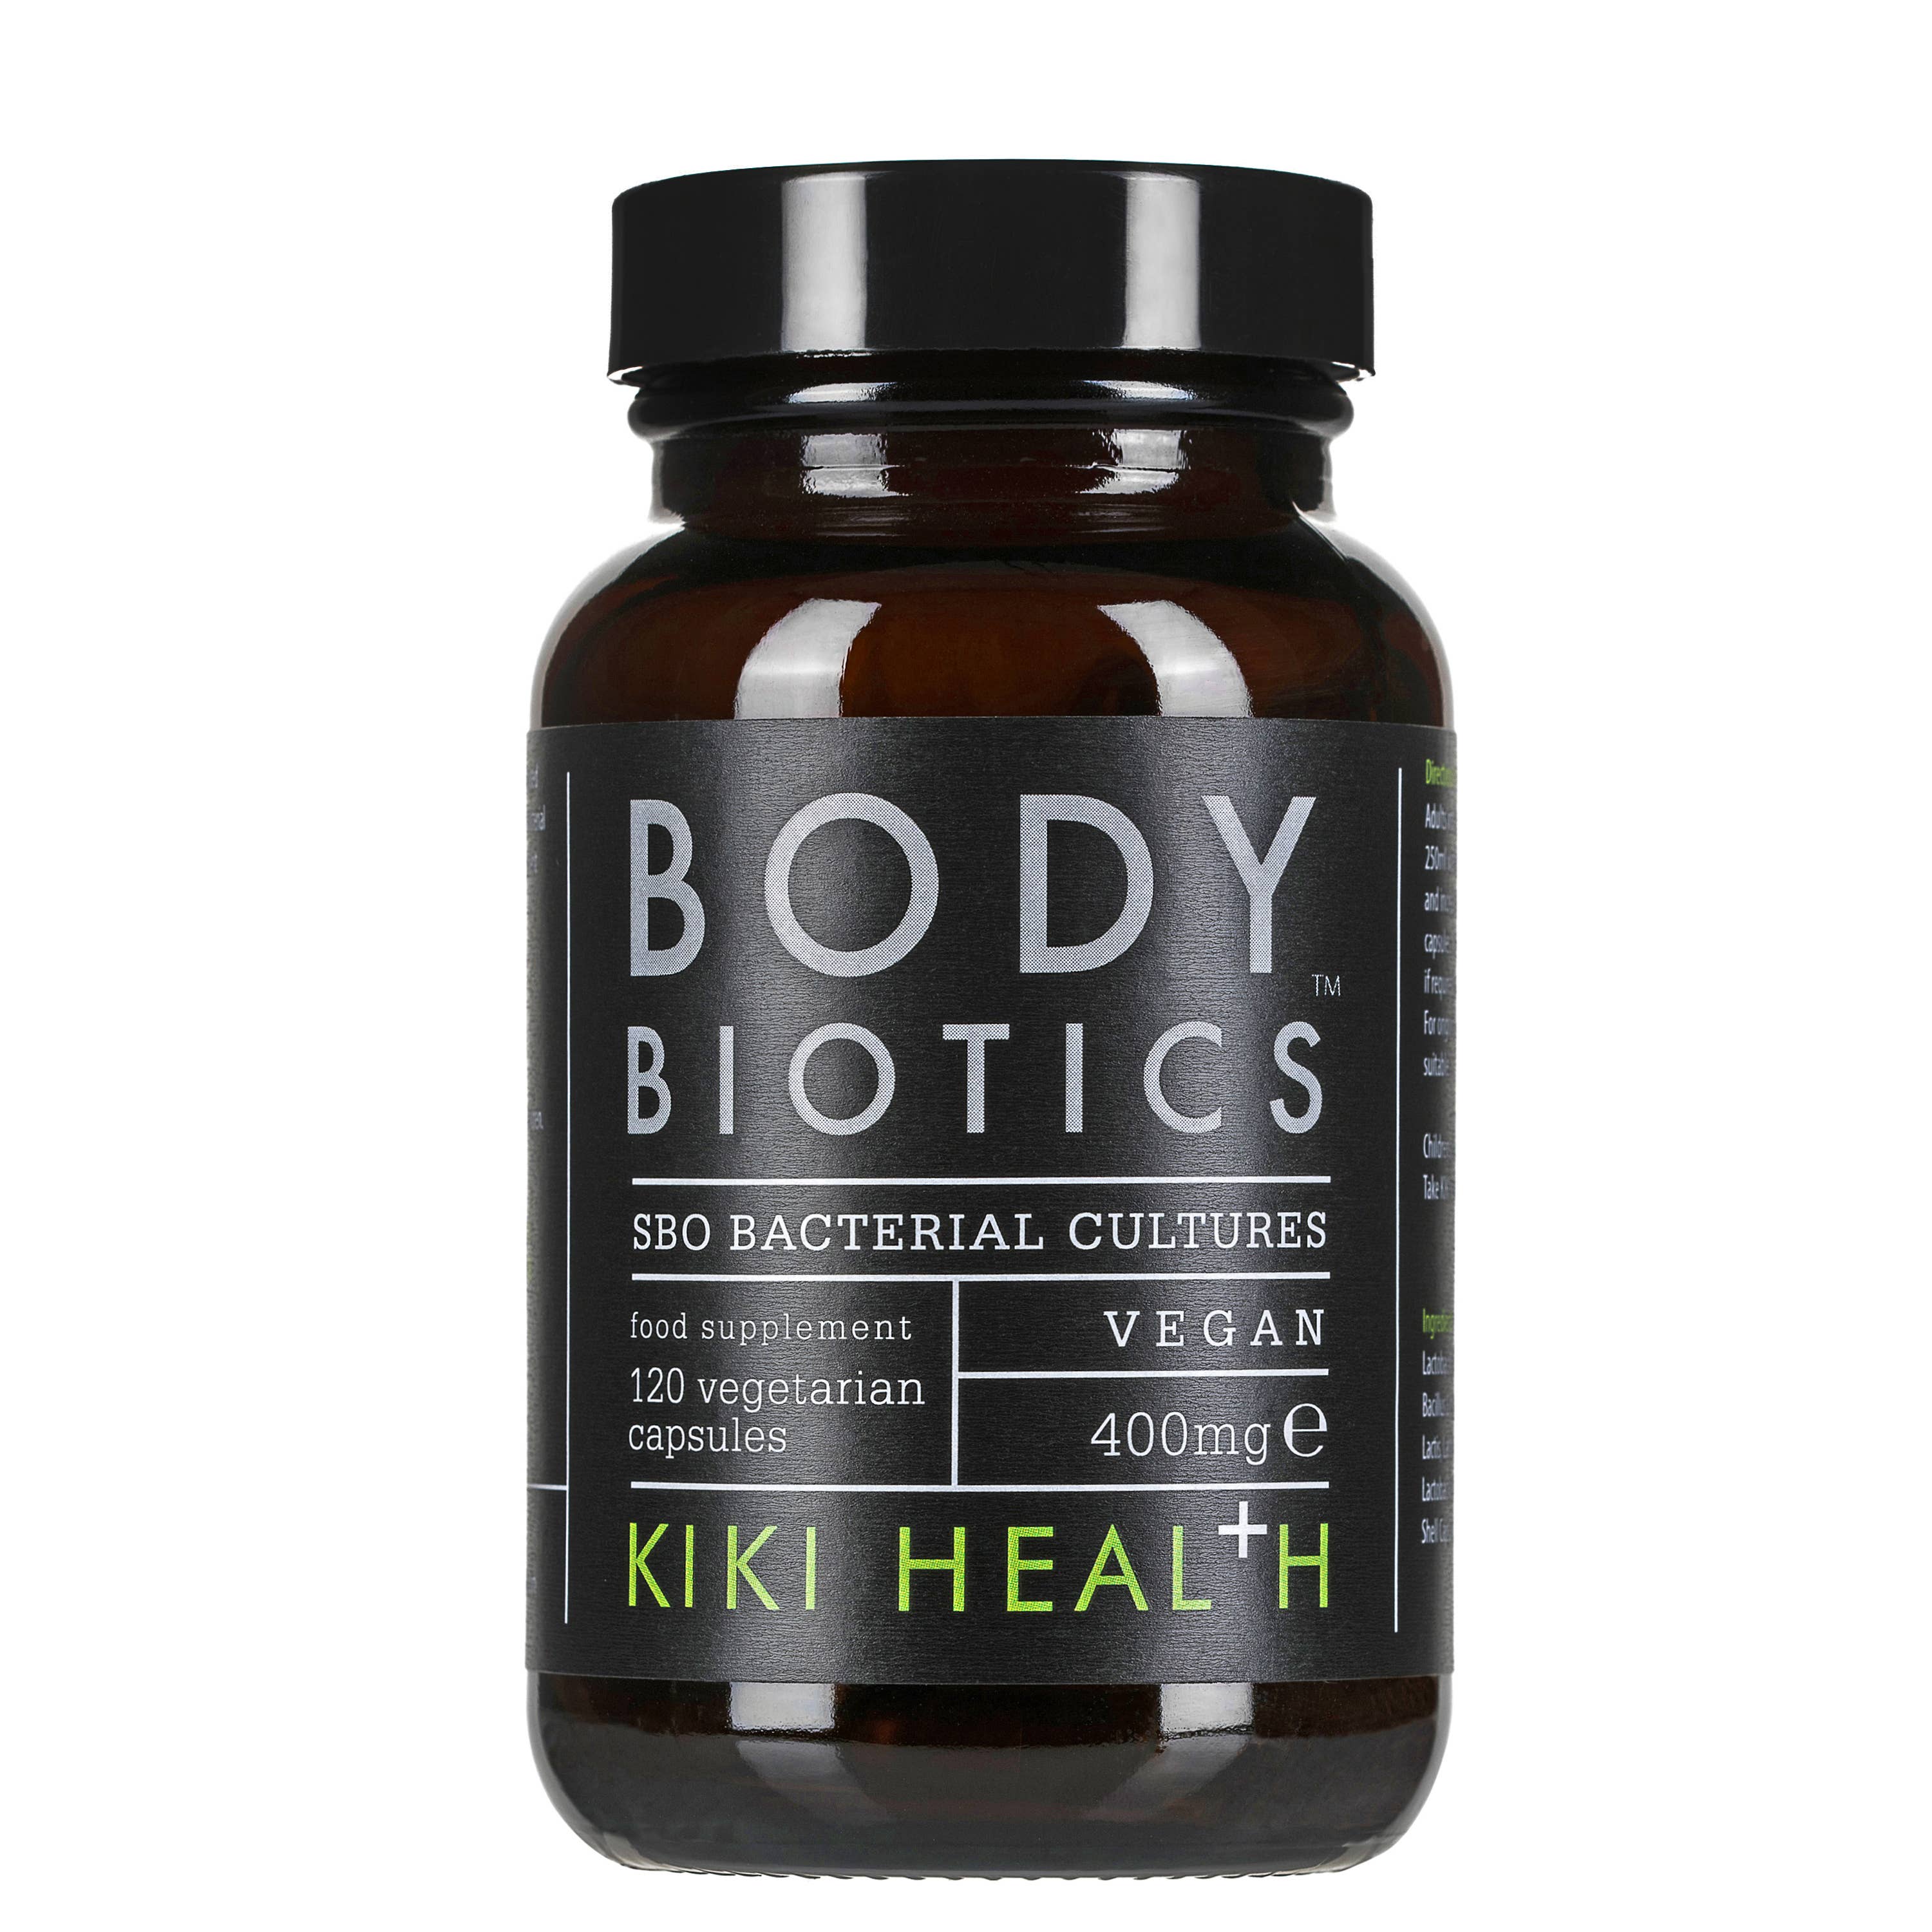 Kiki Health Body Biotics Soil Based Probiotics